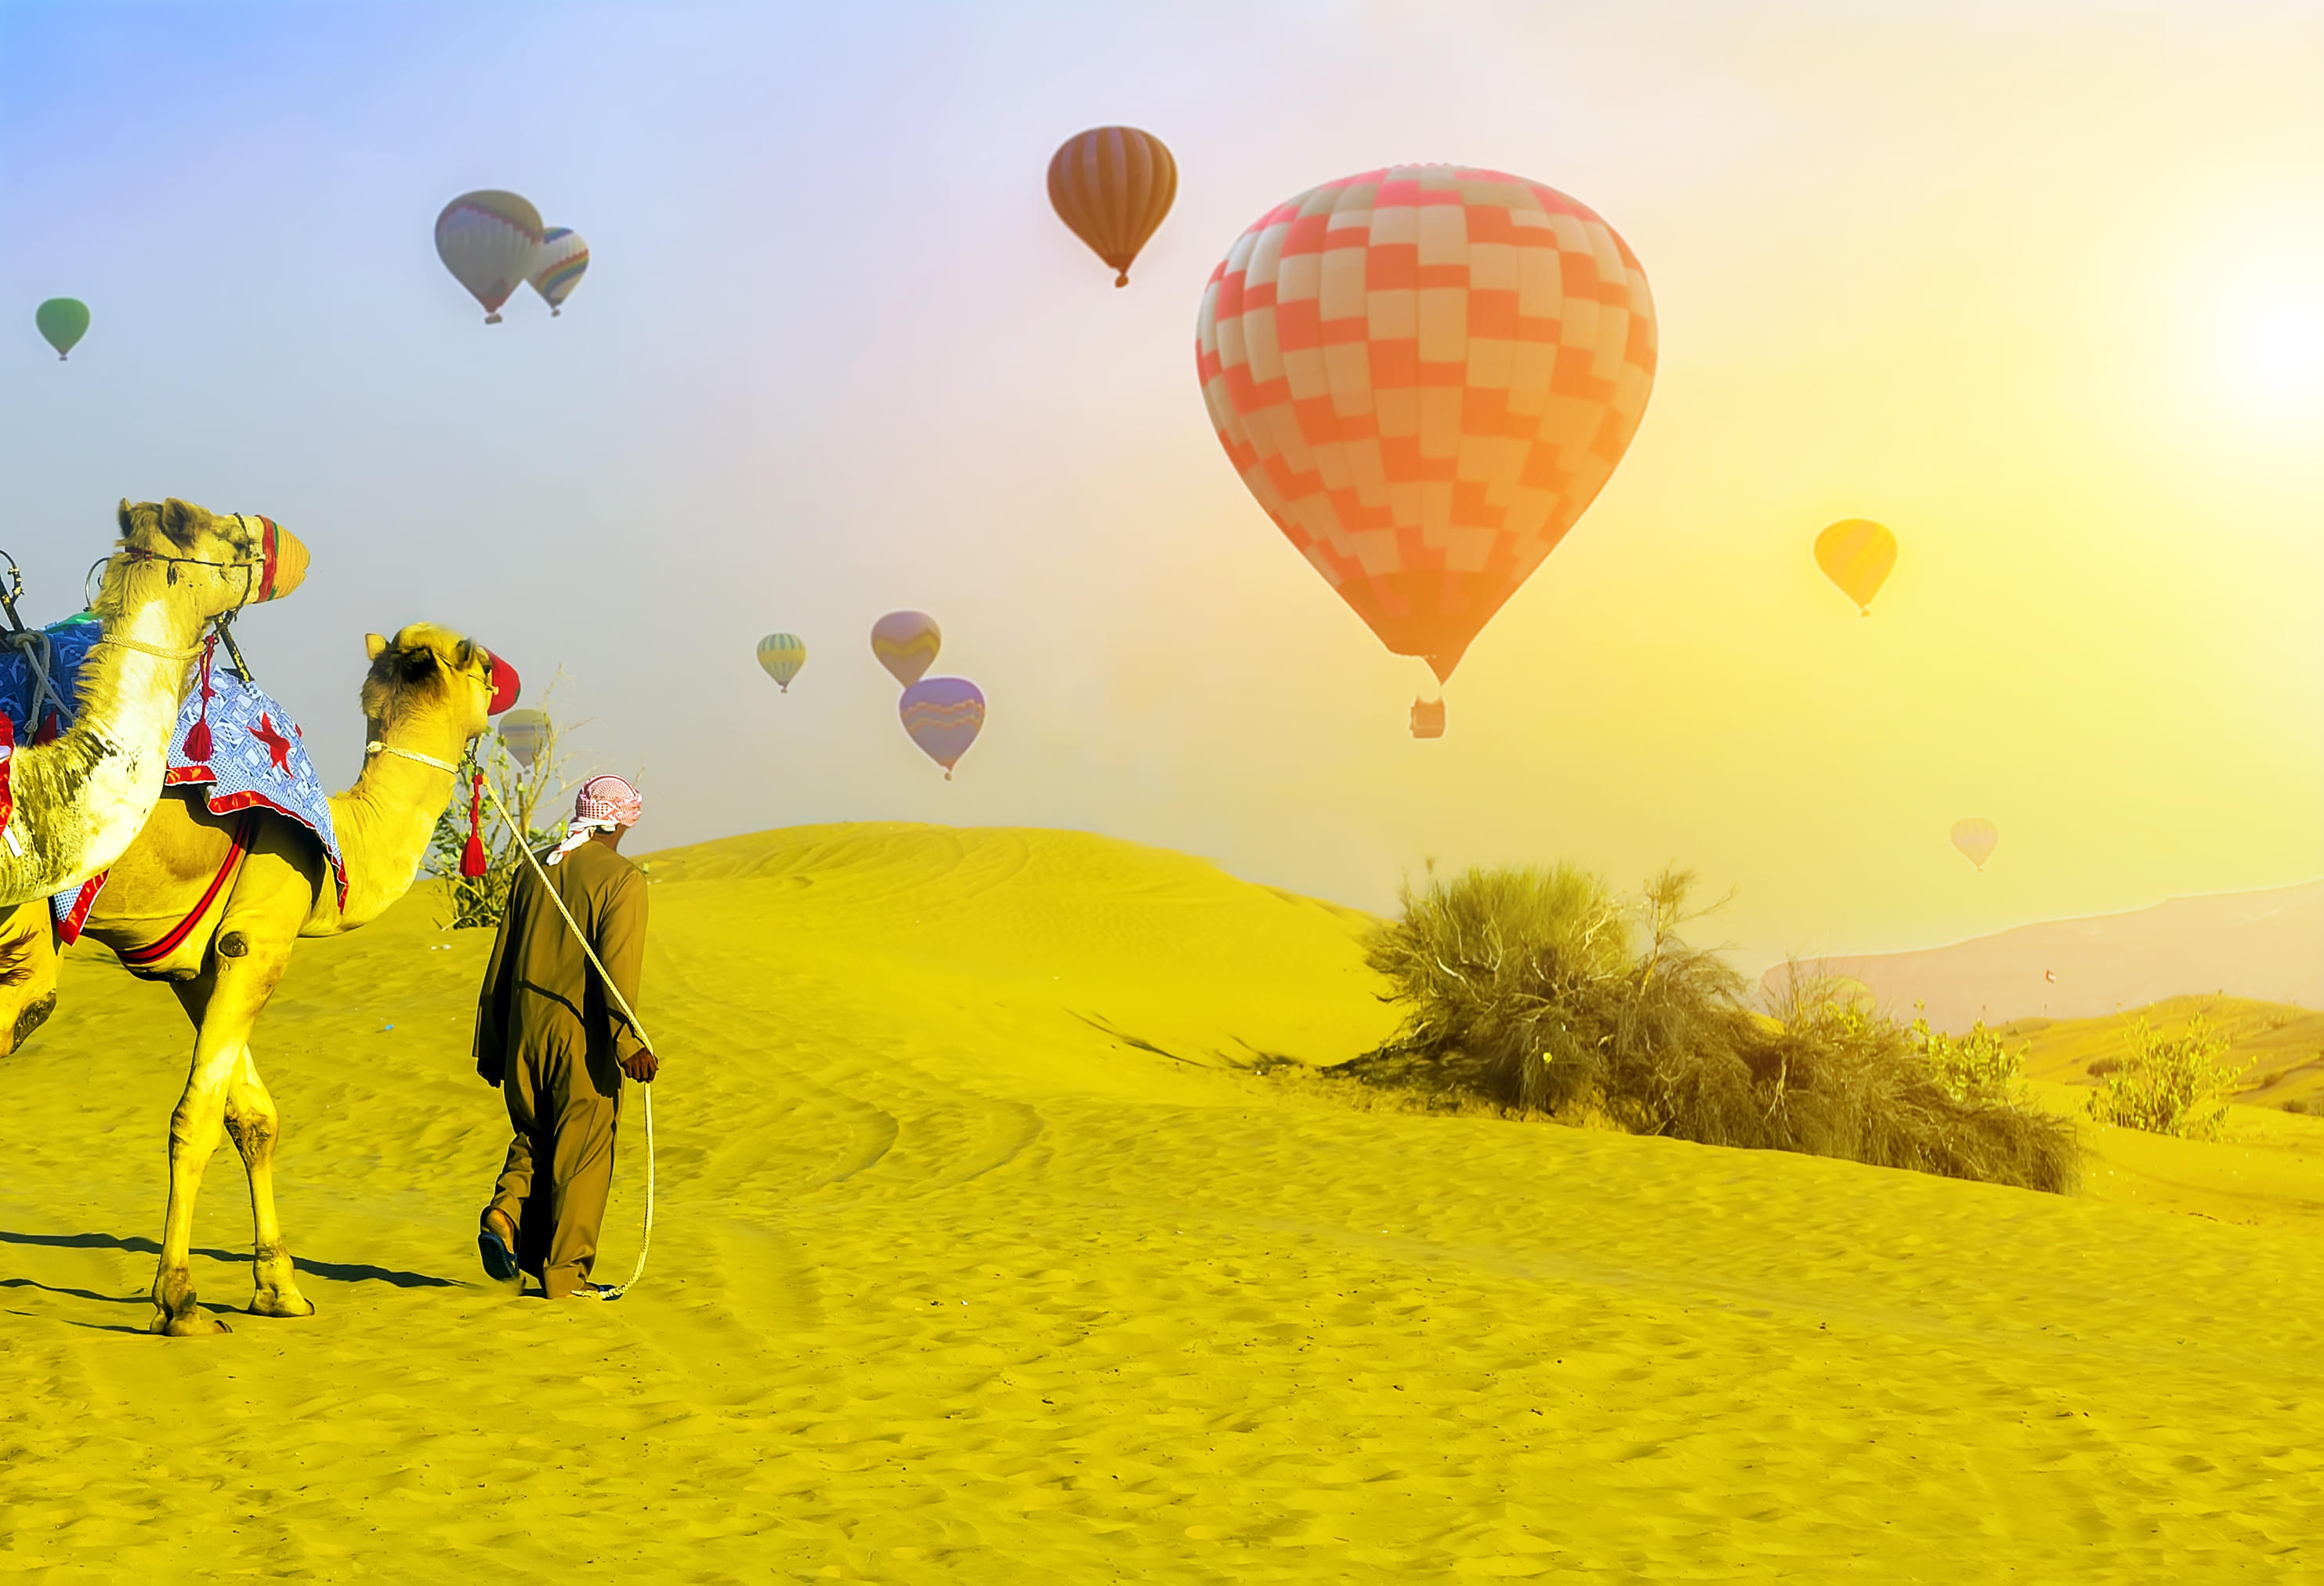 Hot Air Ballon and Camel in Dubai Desert